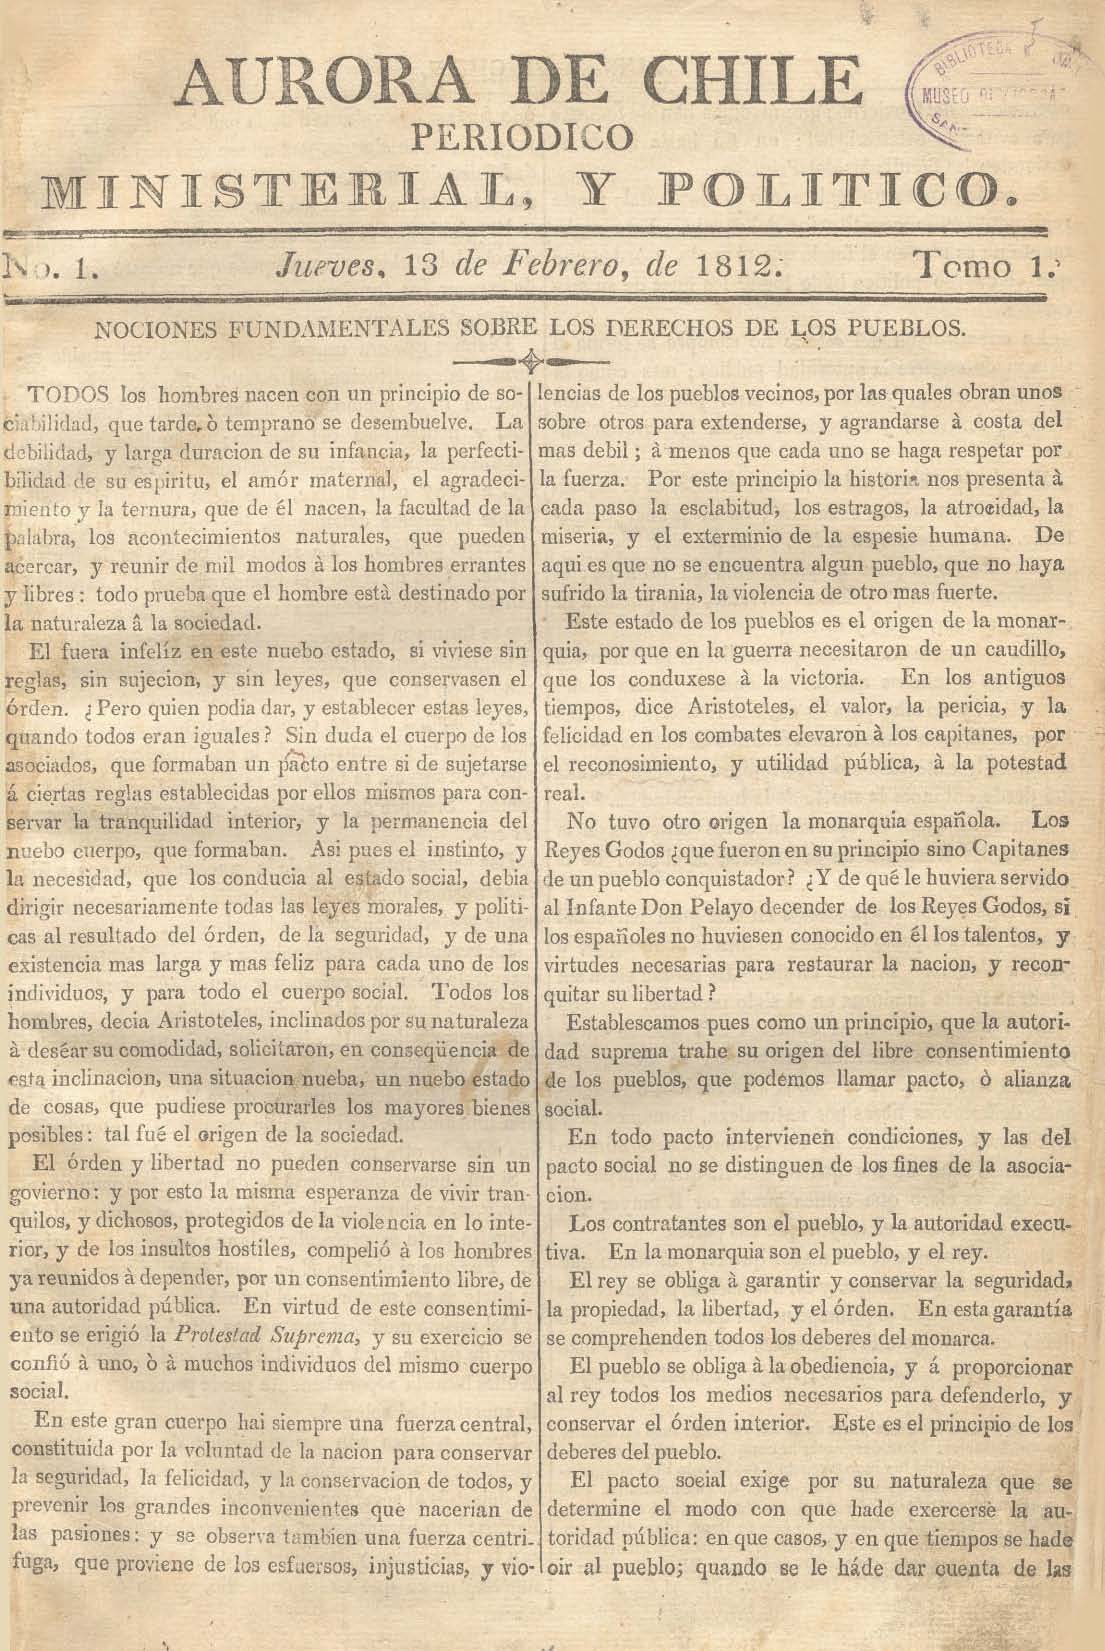 											Ver Núm. 5 (1813): Tomo II. Jueves 4 de Febrero
										